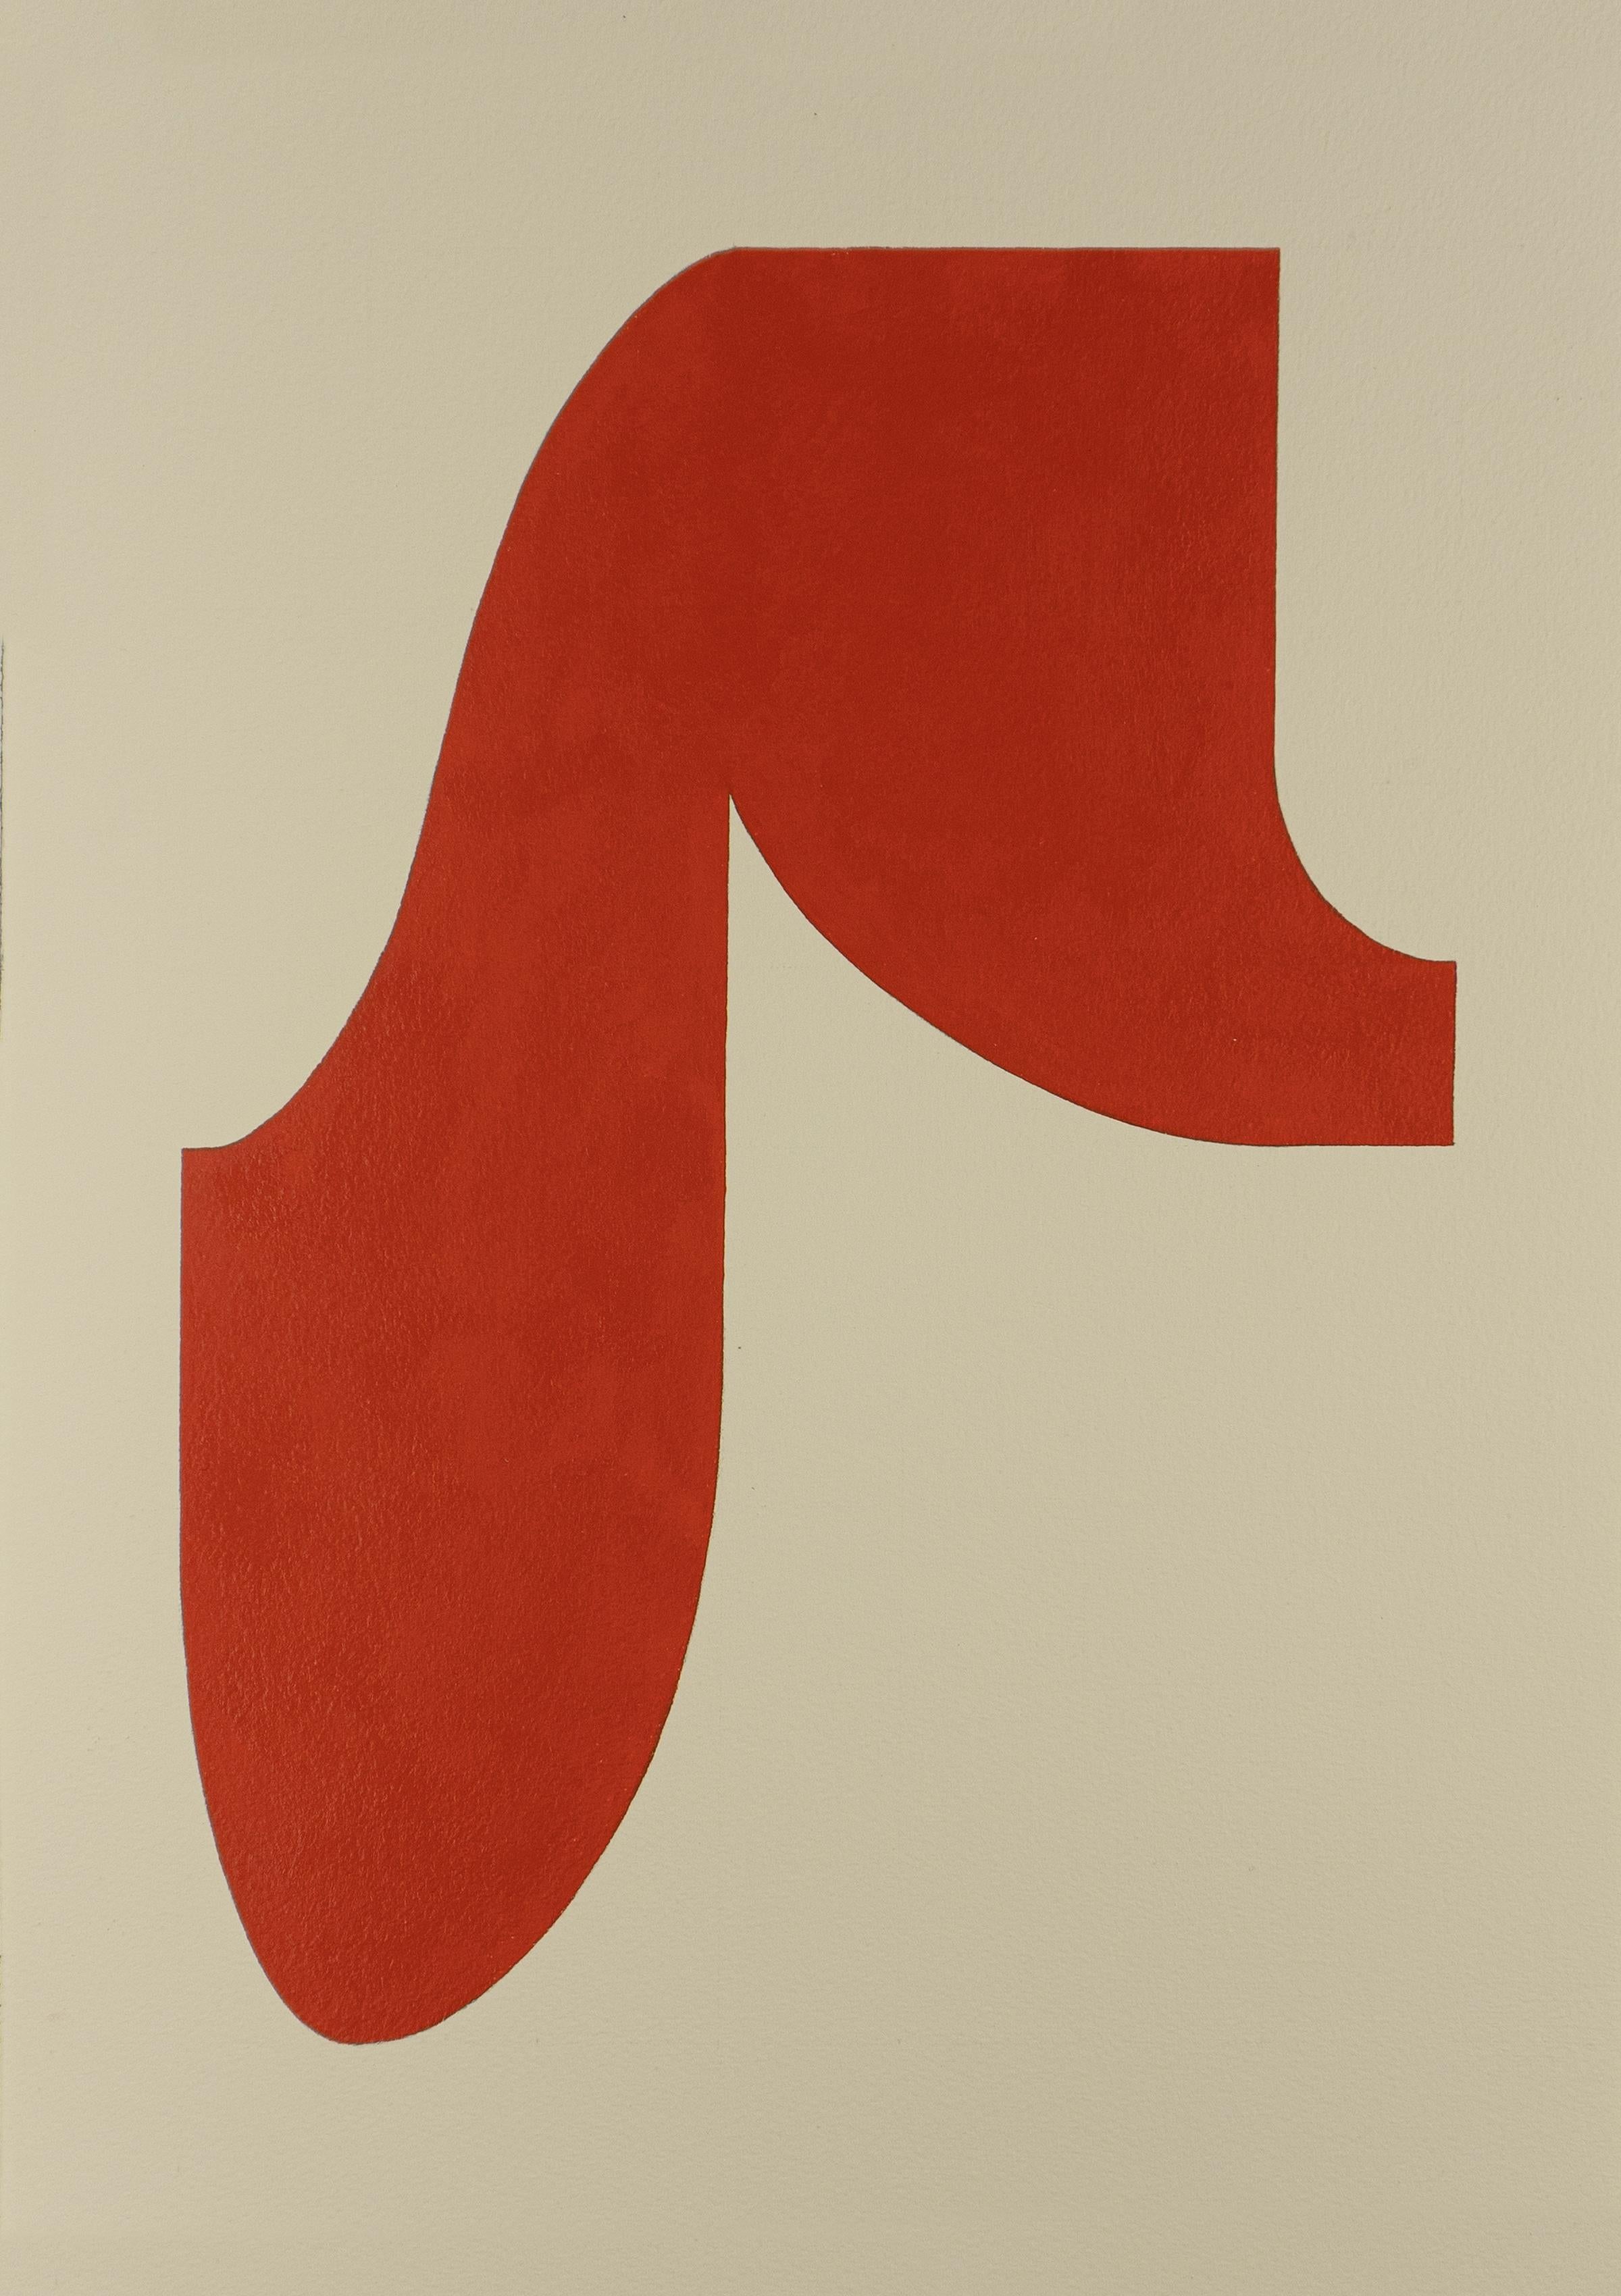 Form 22 (2019) - Abstrakte Form, minimalistische, gestische Form, tiefes Rot und Weiß auf Papier